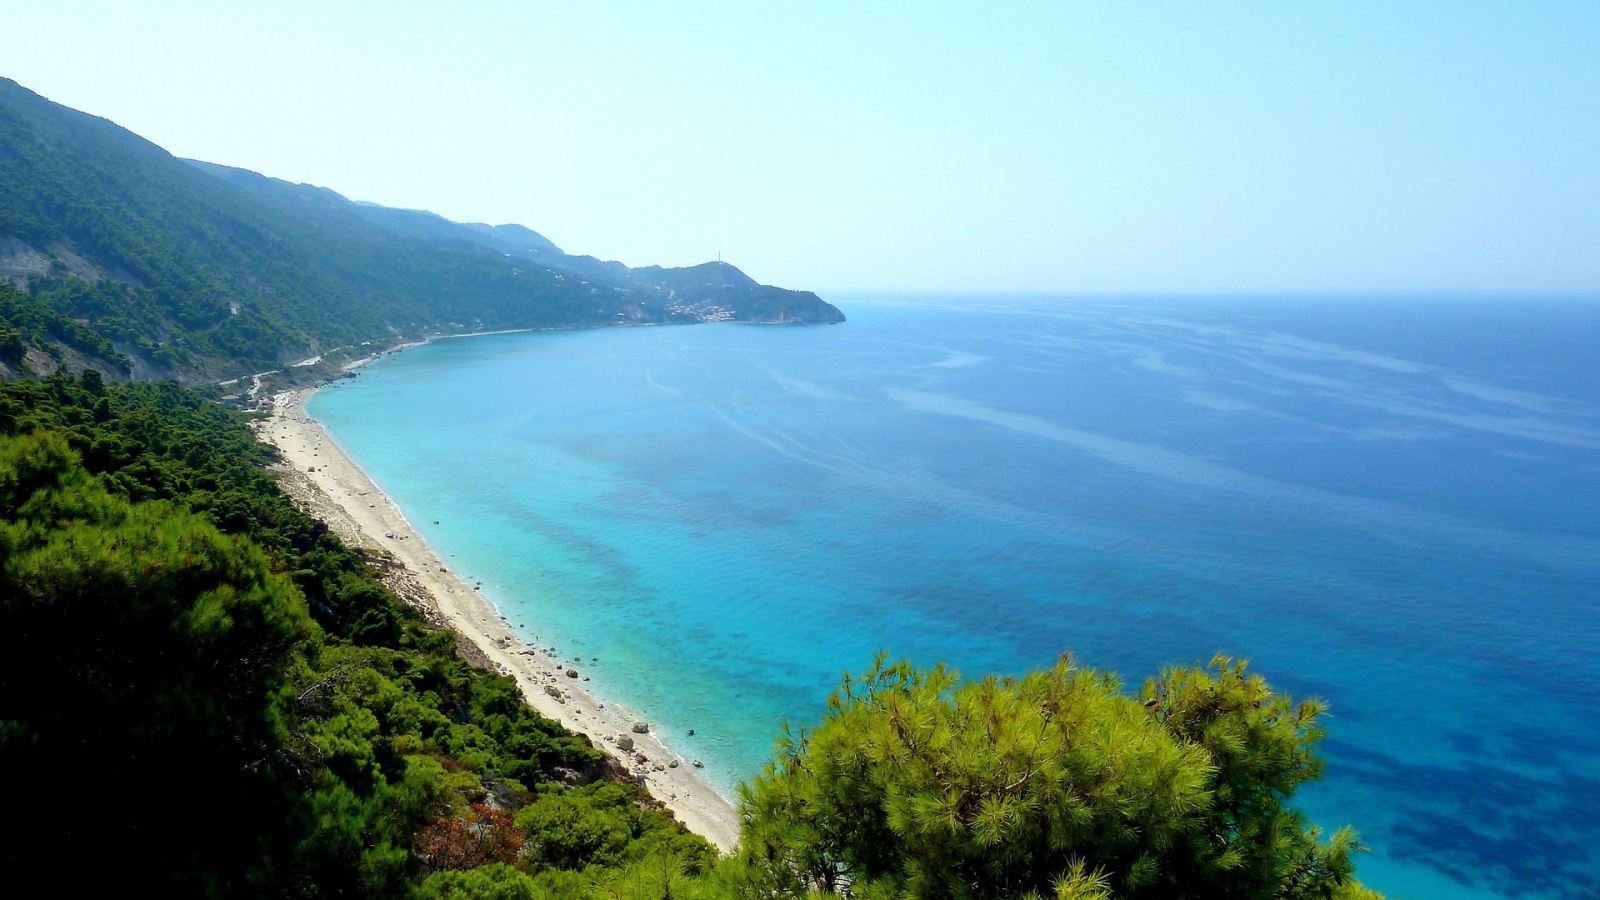 Azure sea off the coast of Lefkada, Greece